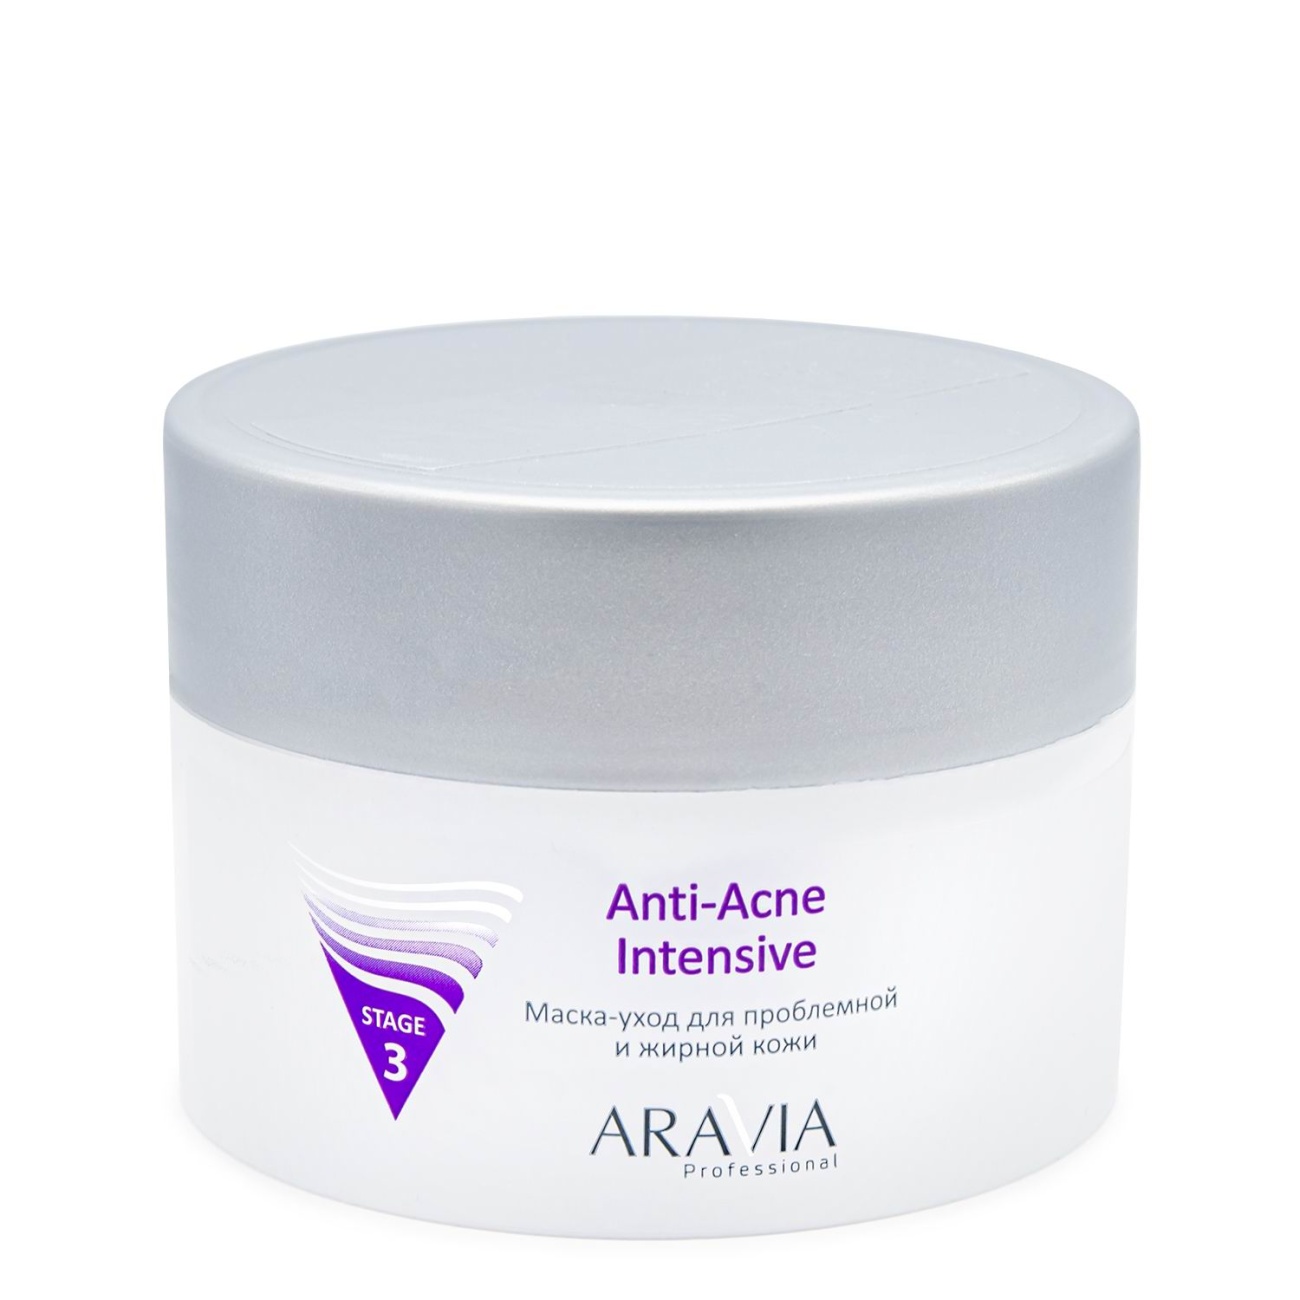 Маска для лица ARAVIA Professional Anti-Acne Intensive для проблемной и жирной кожи 150 мл 6012